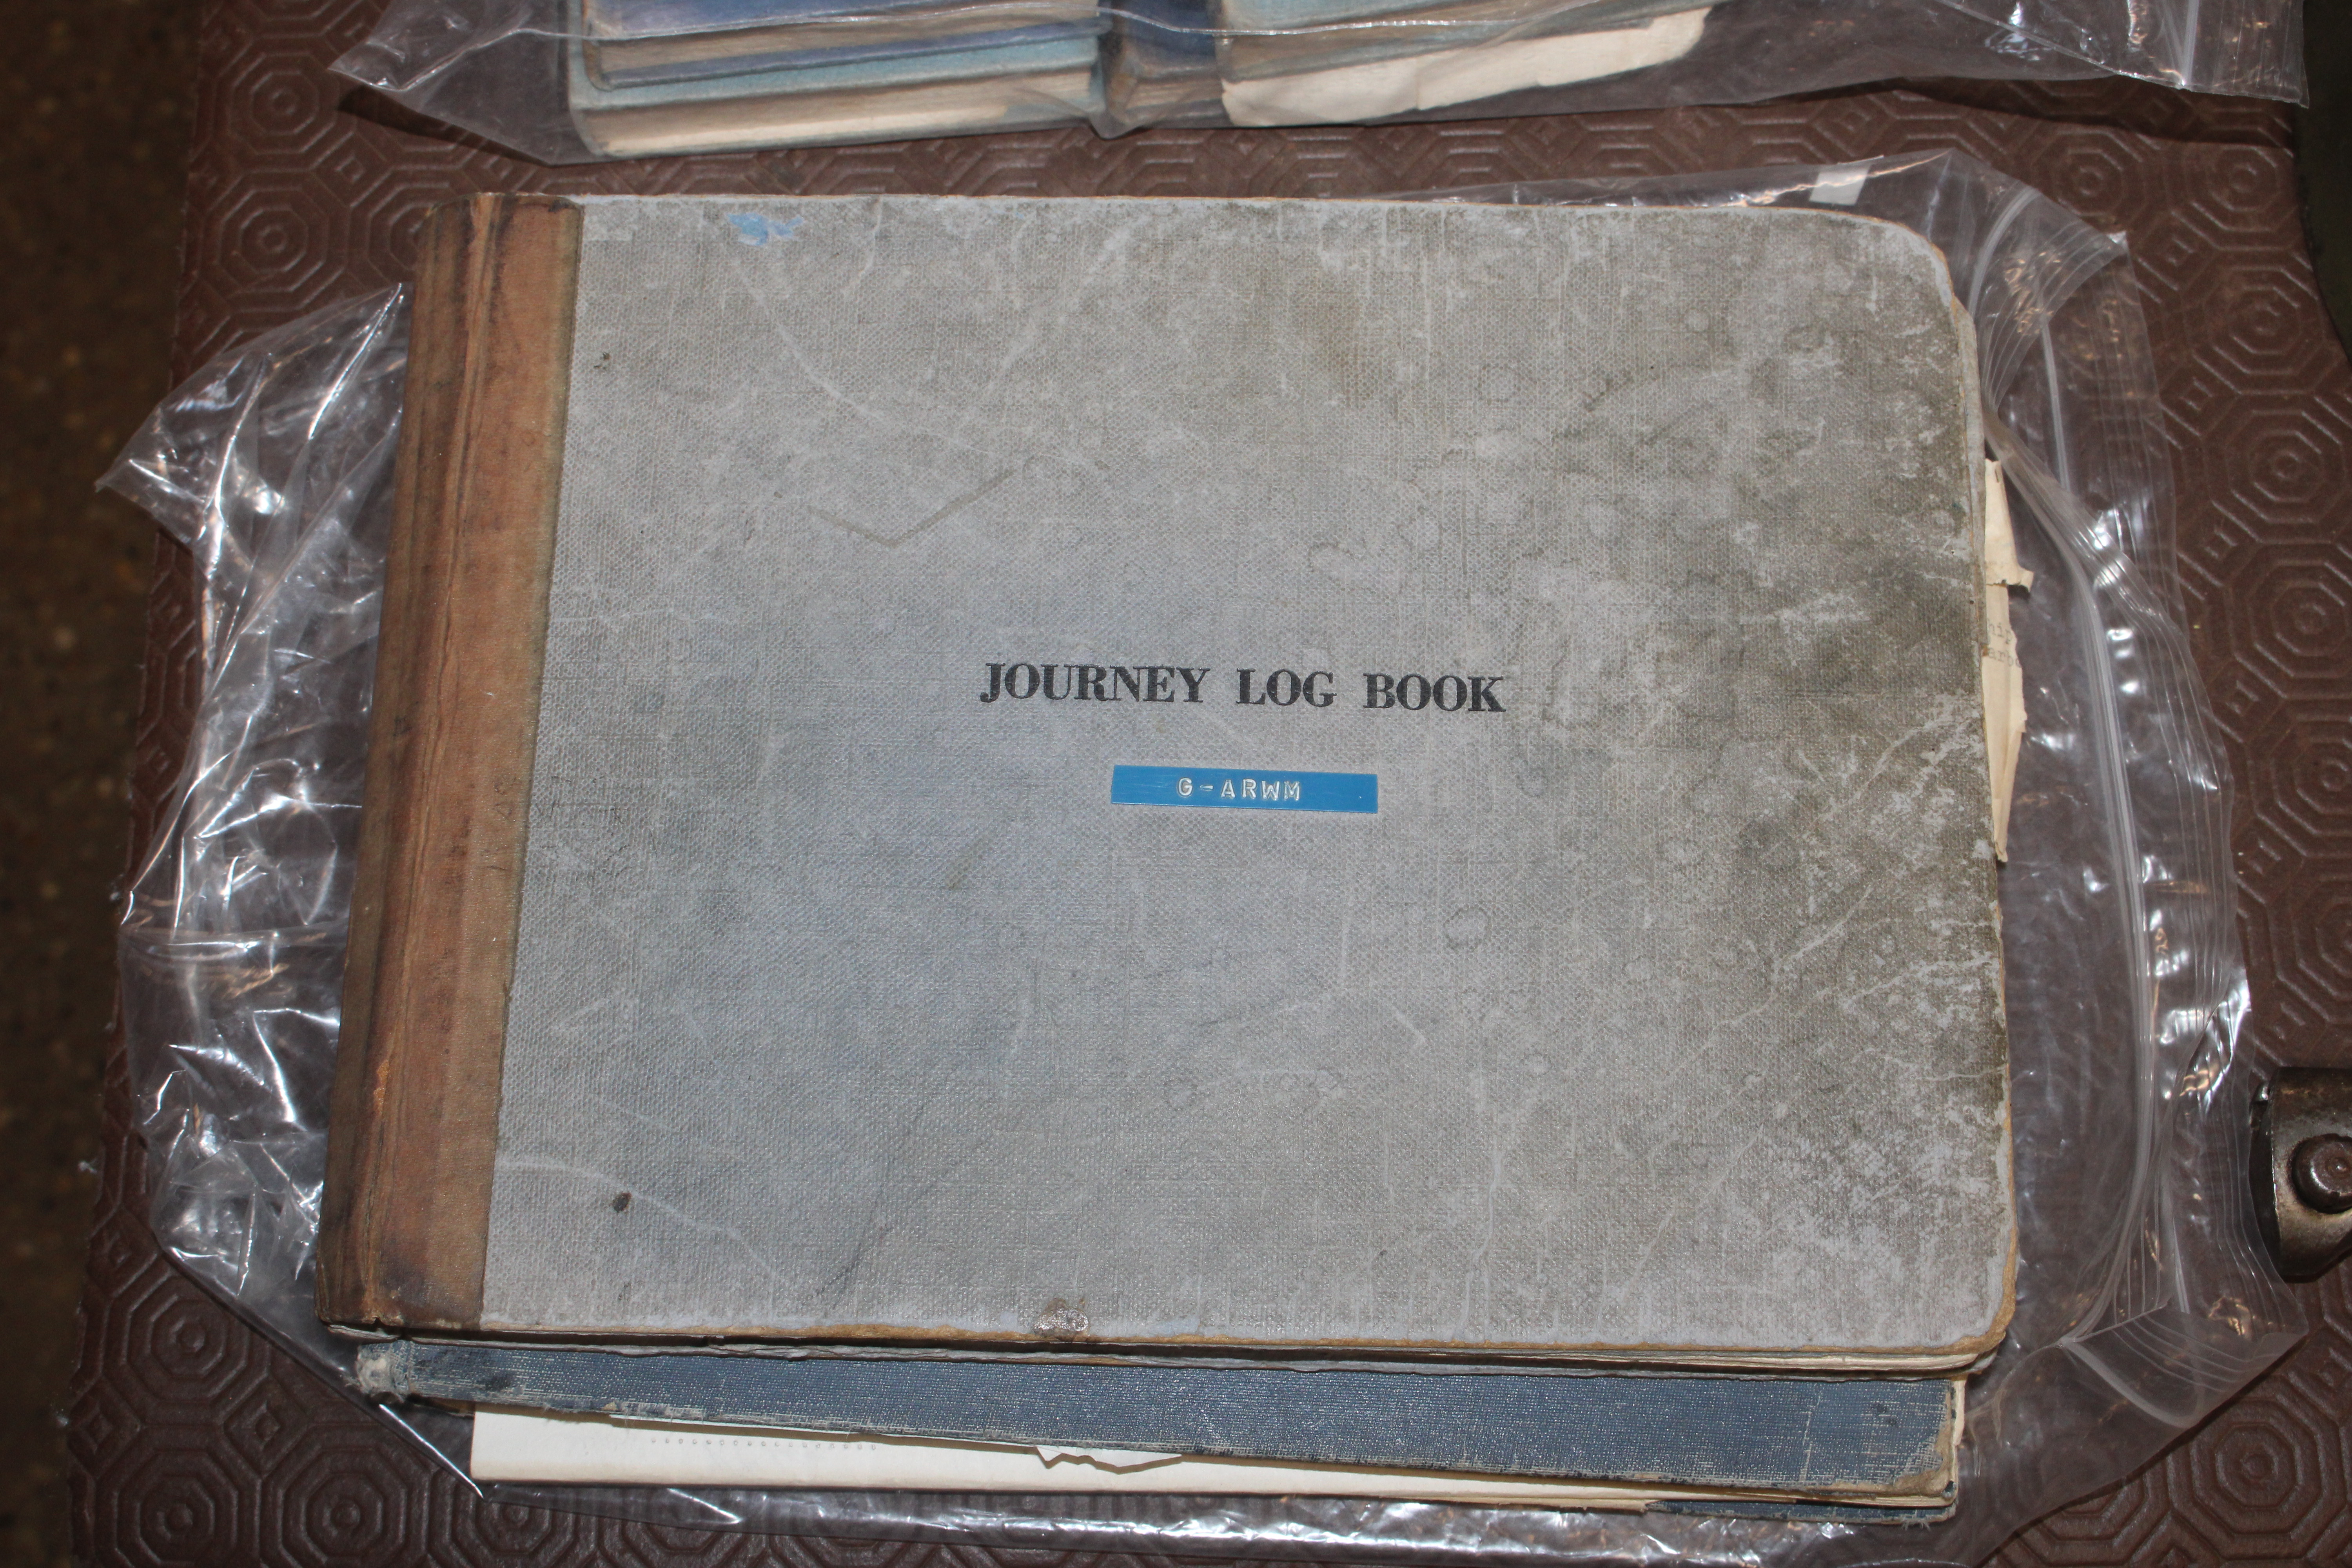 Aircraft log books to J. Hodgson